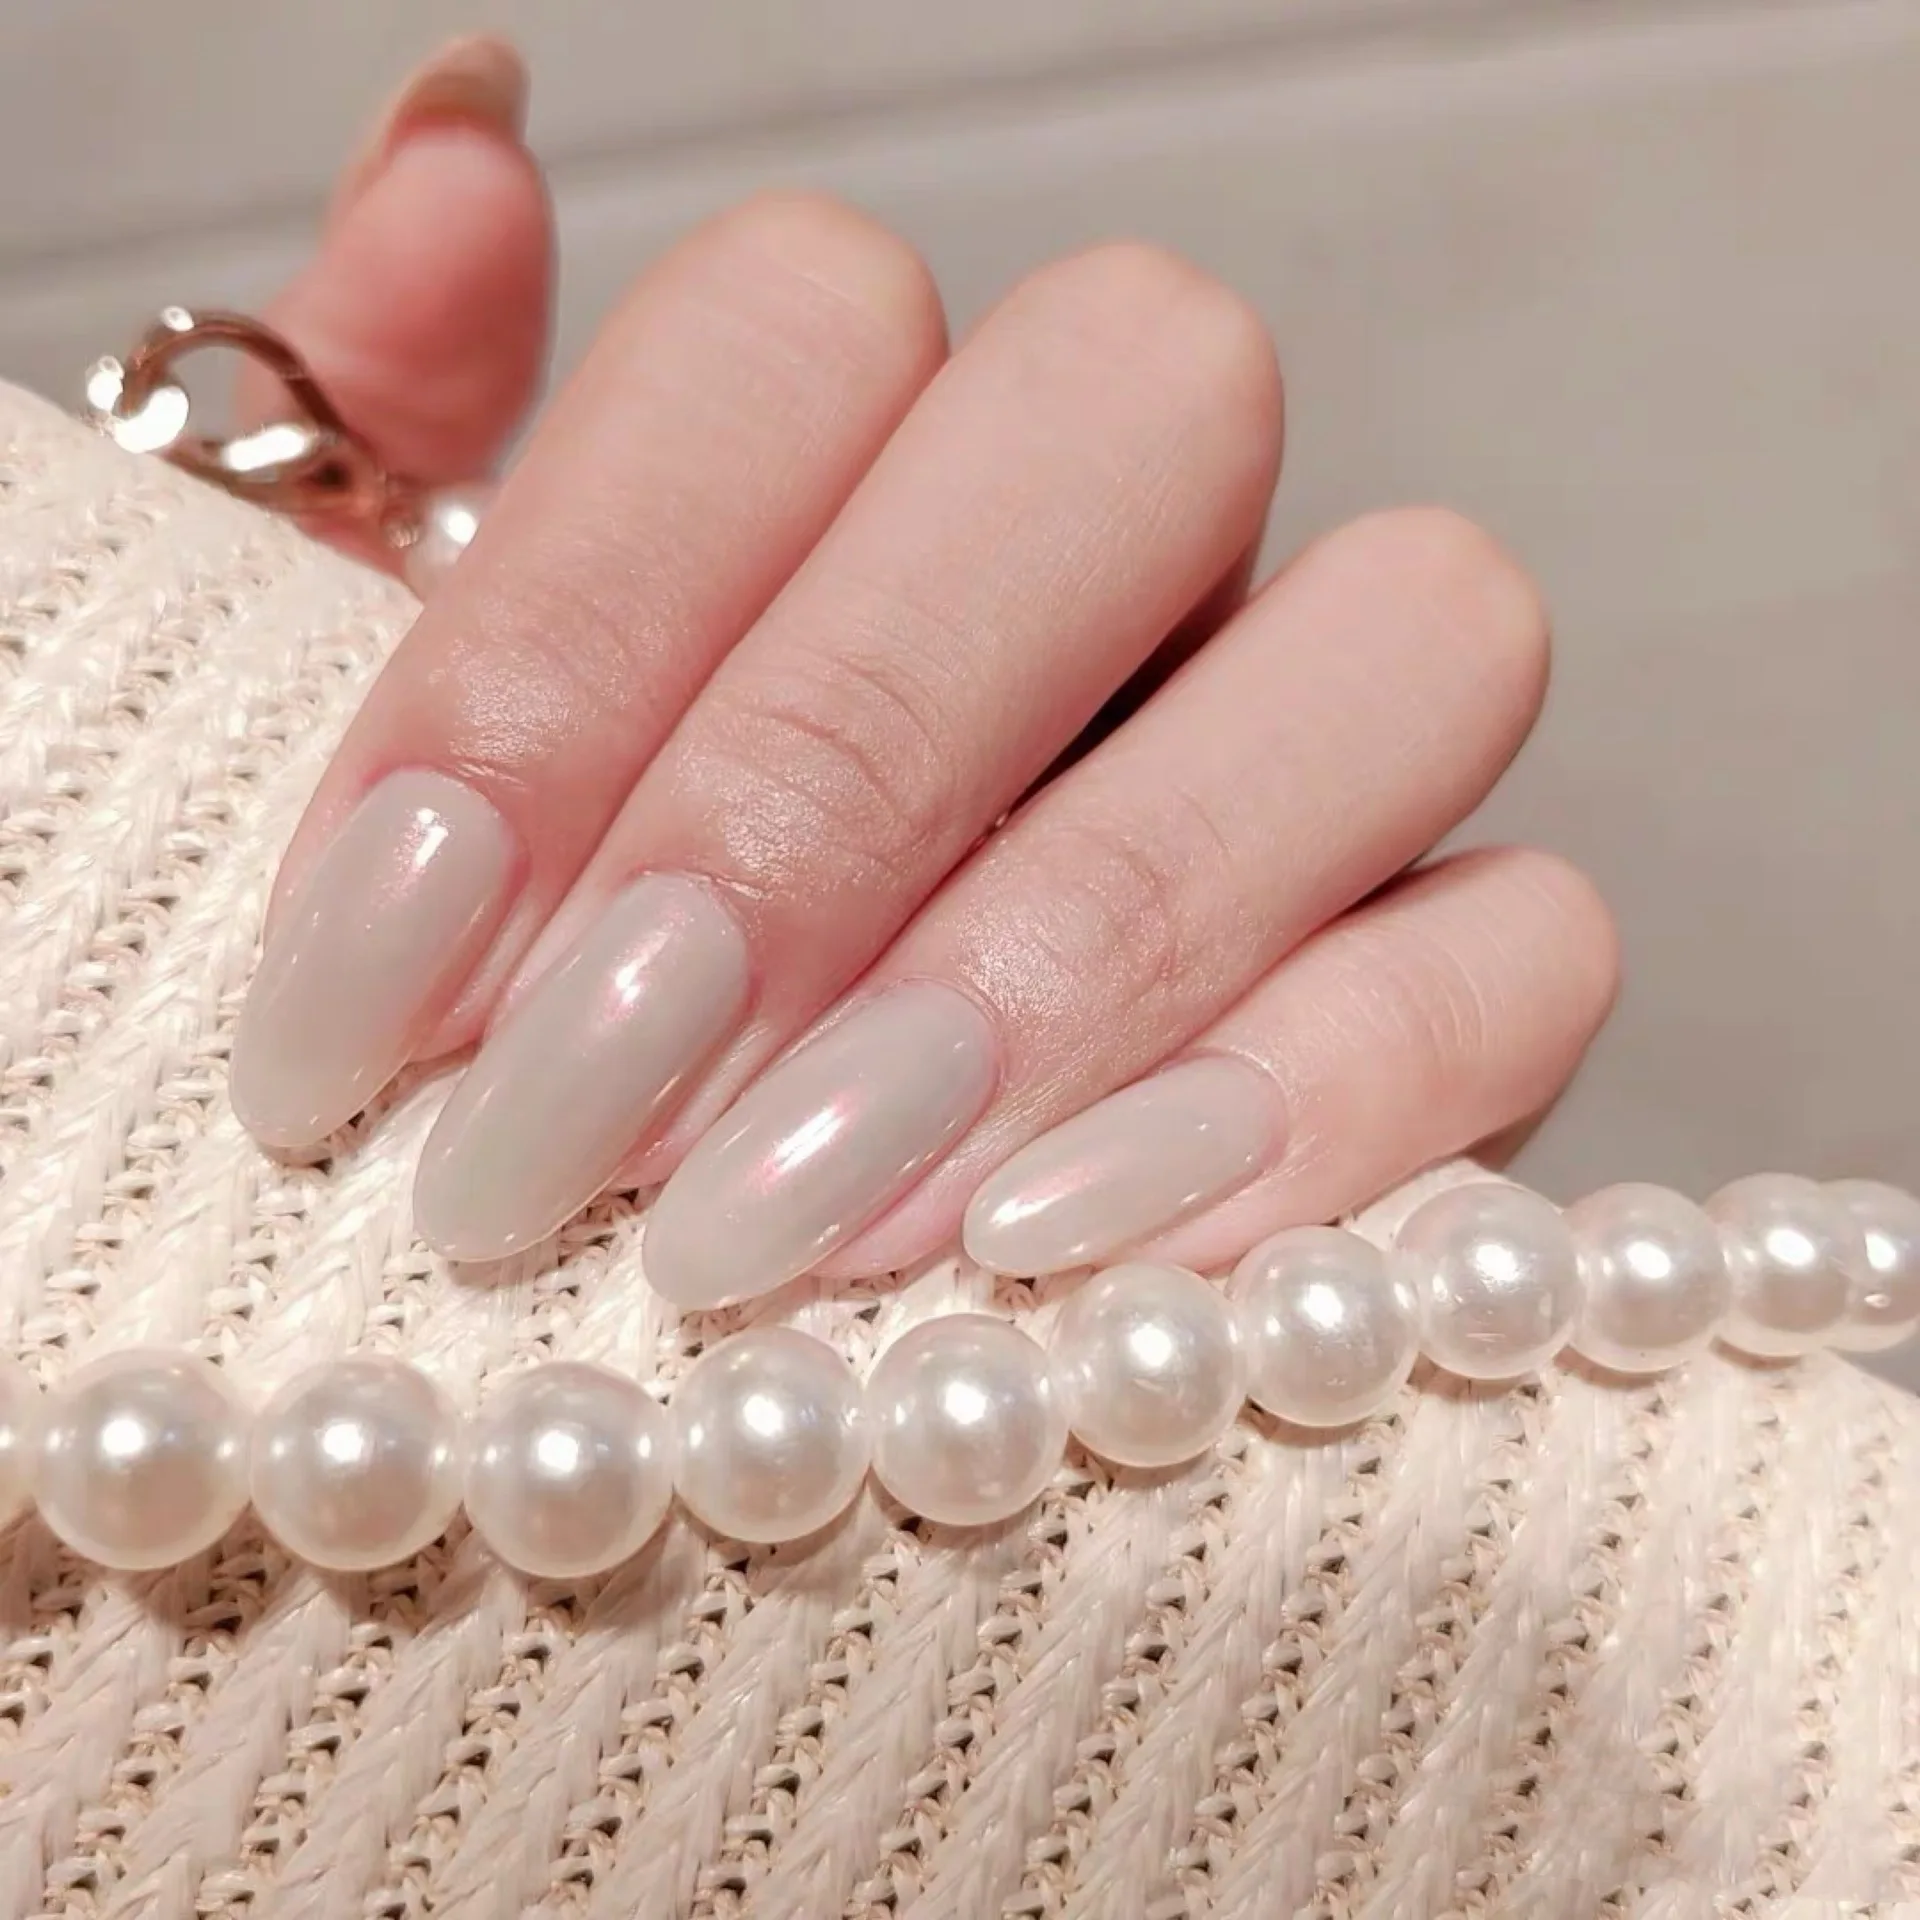 

Hotsale Pearl Powder Cream White Detachable Almond Press On Nails 24pcs Wholesale Artificial Fingernails